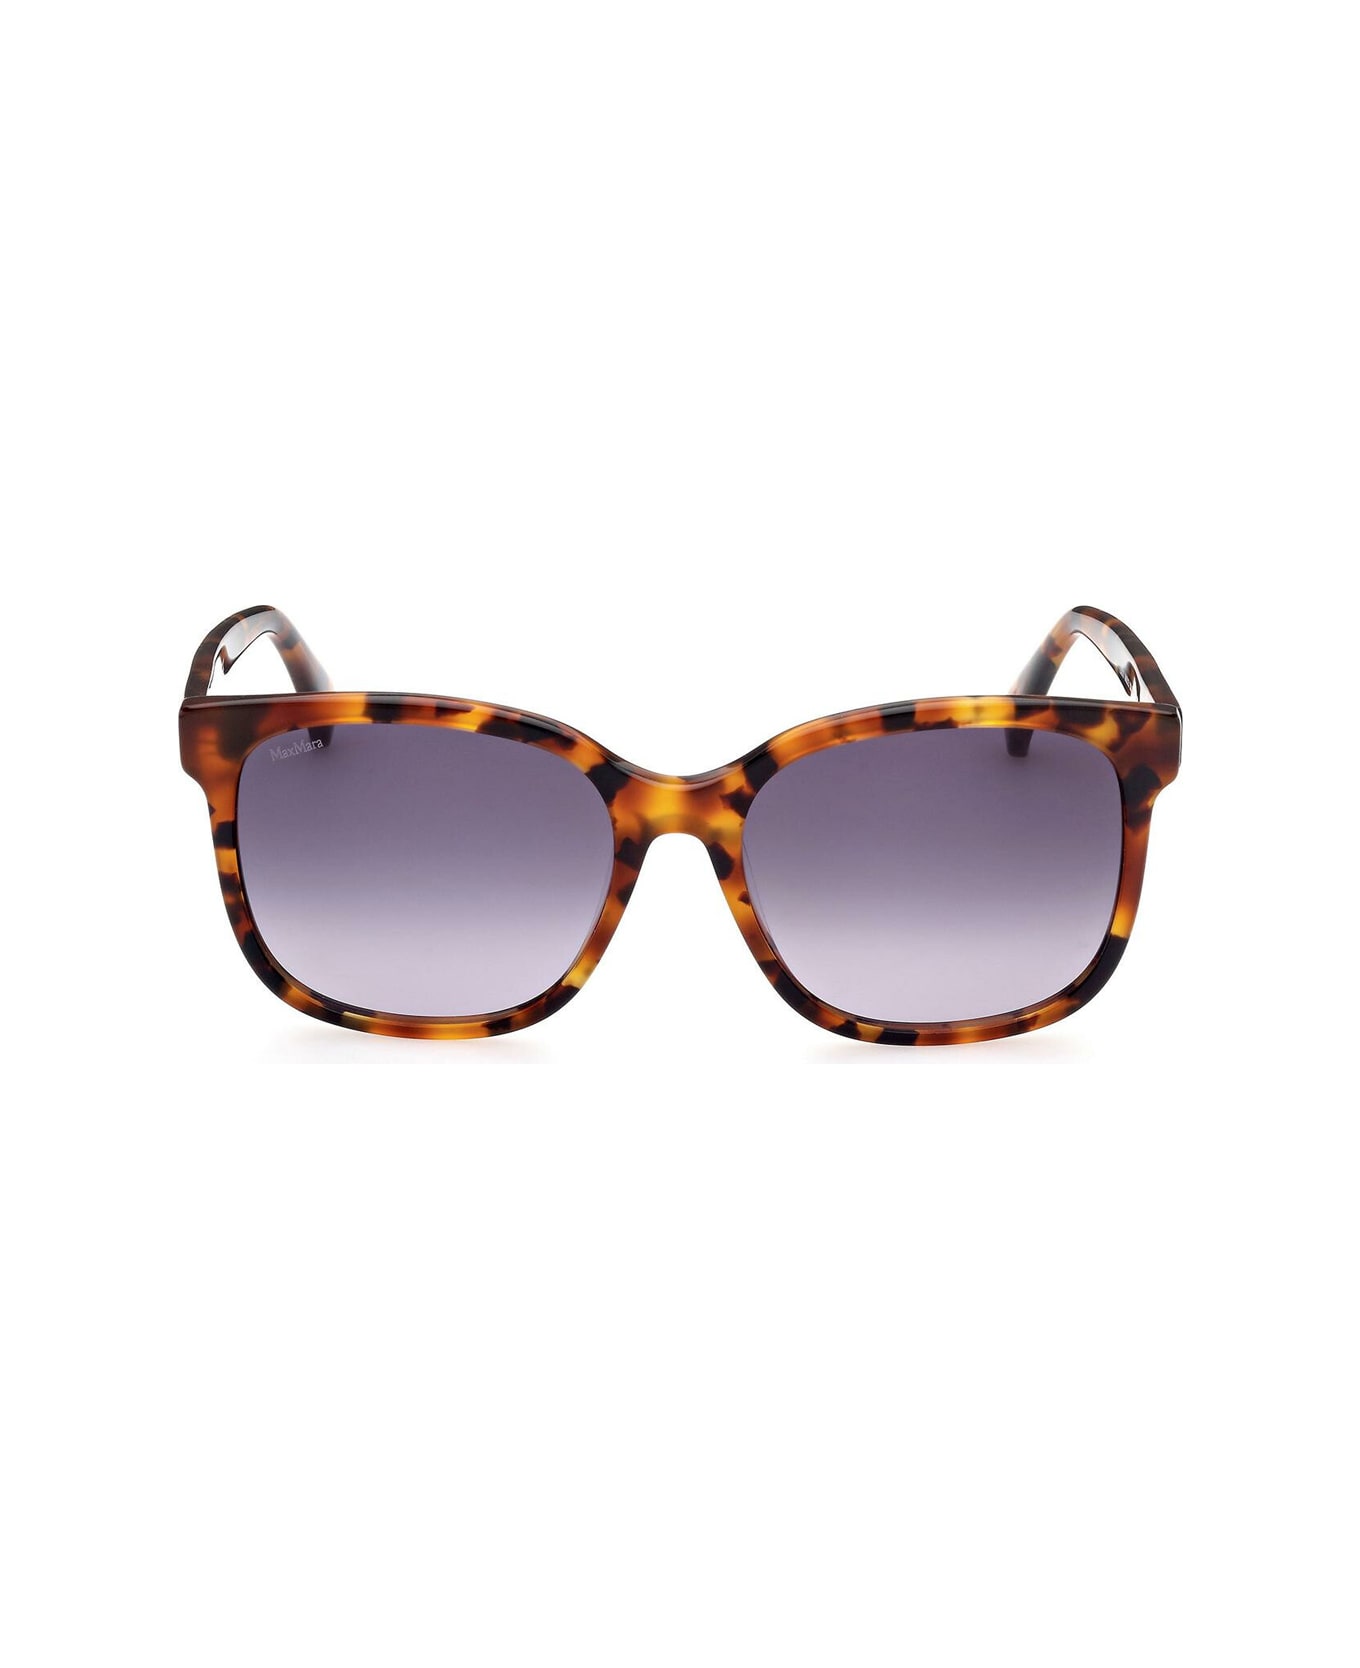 Max Mara Mm0025 Sunglasses - Arancione